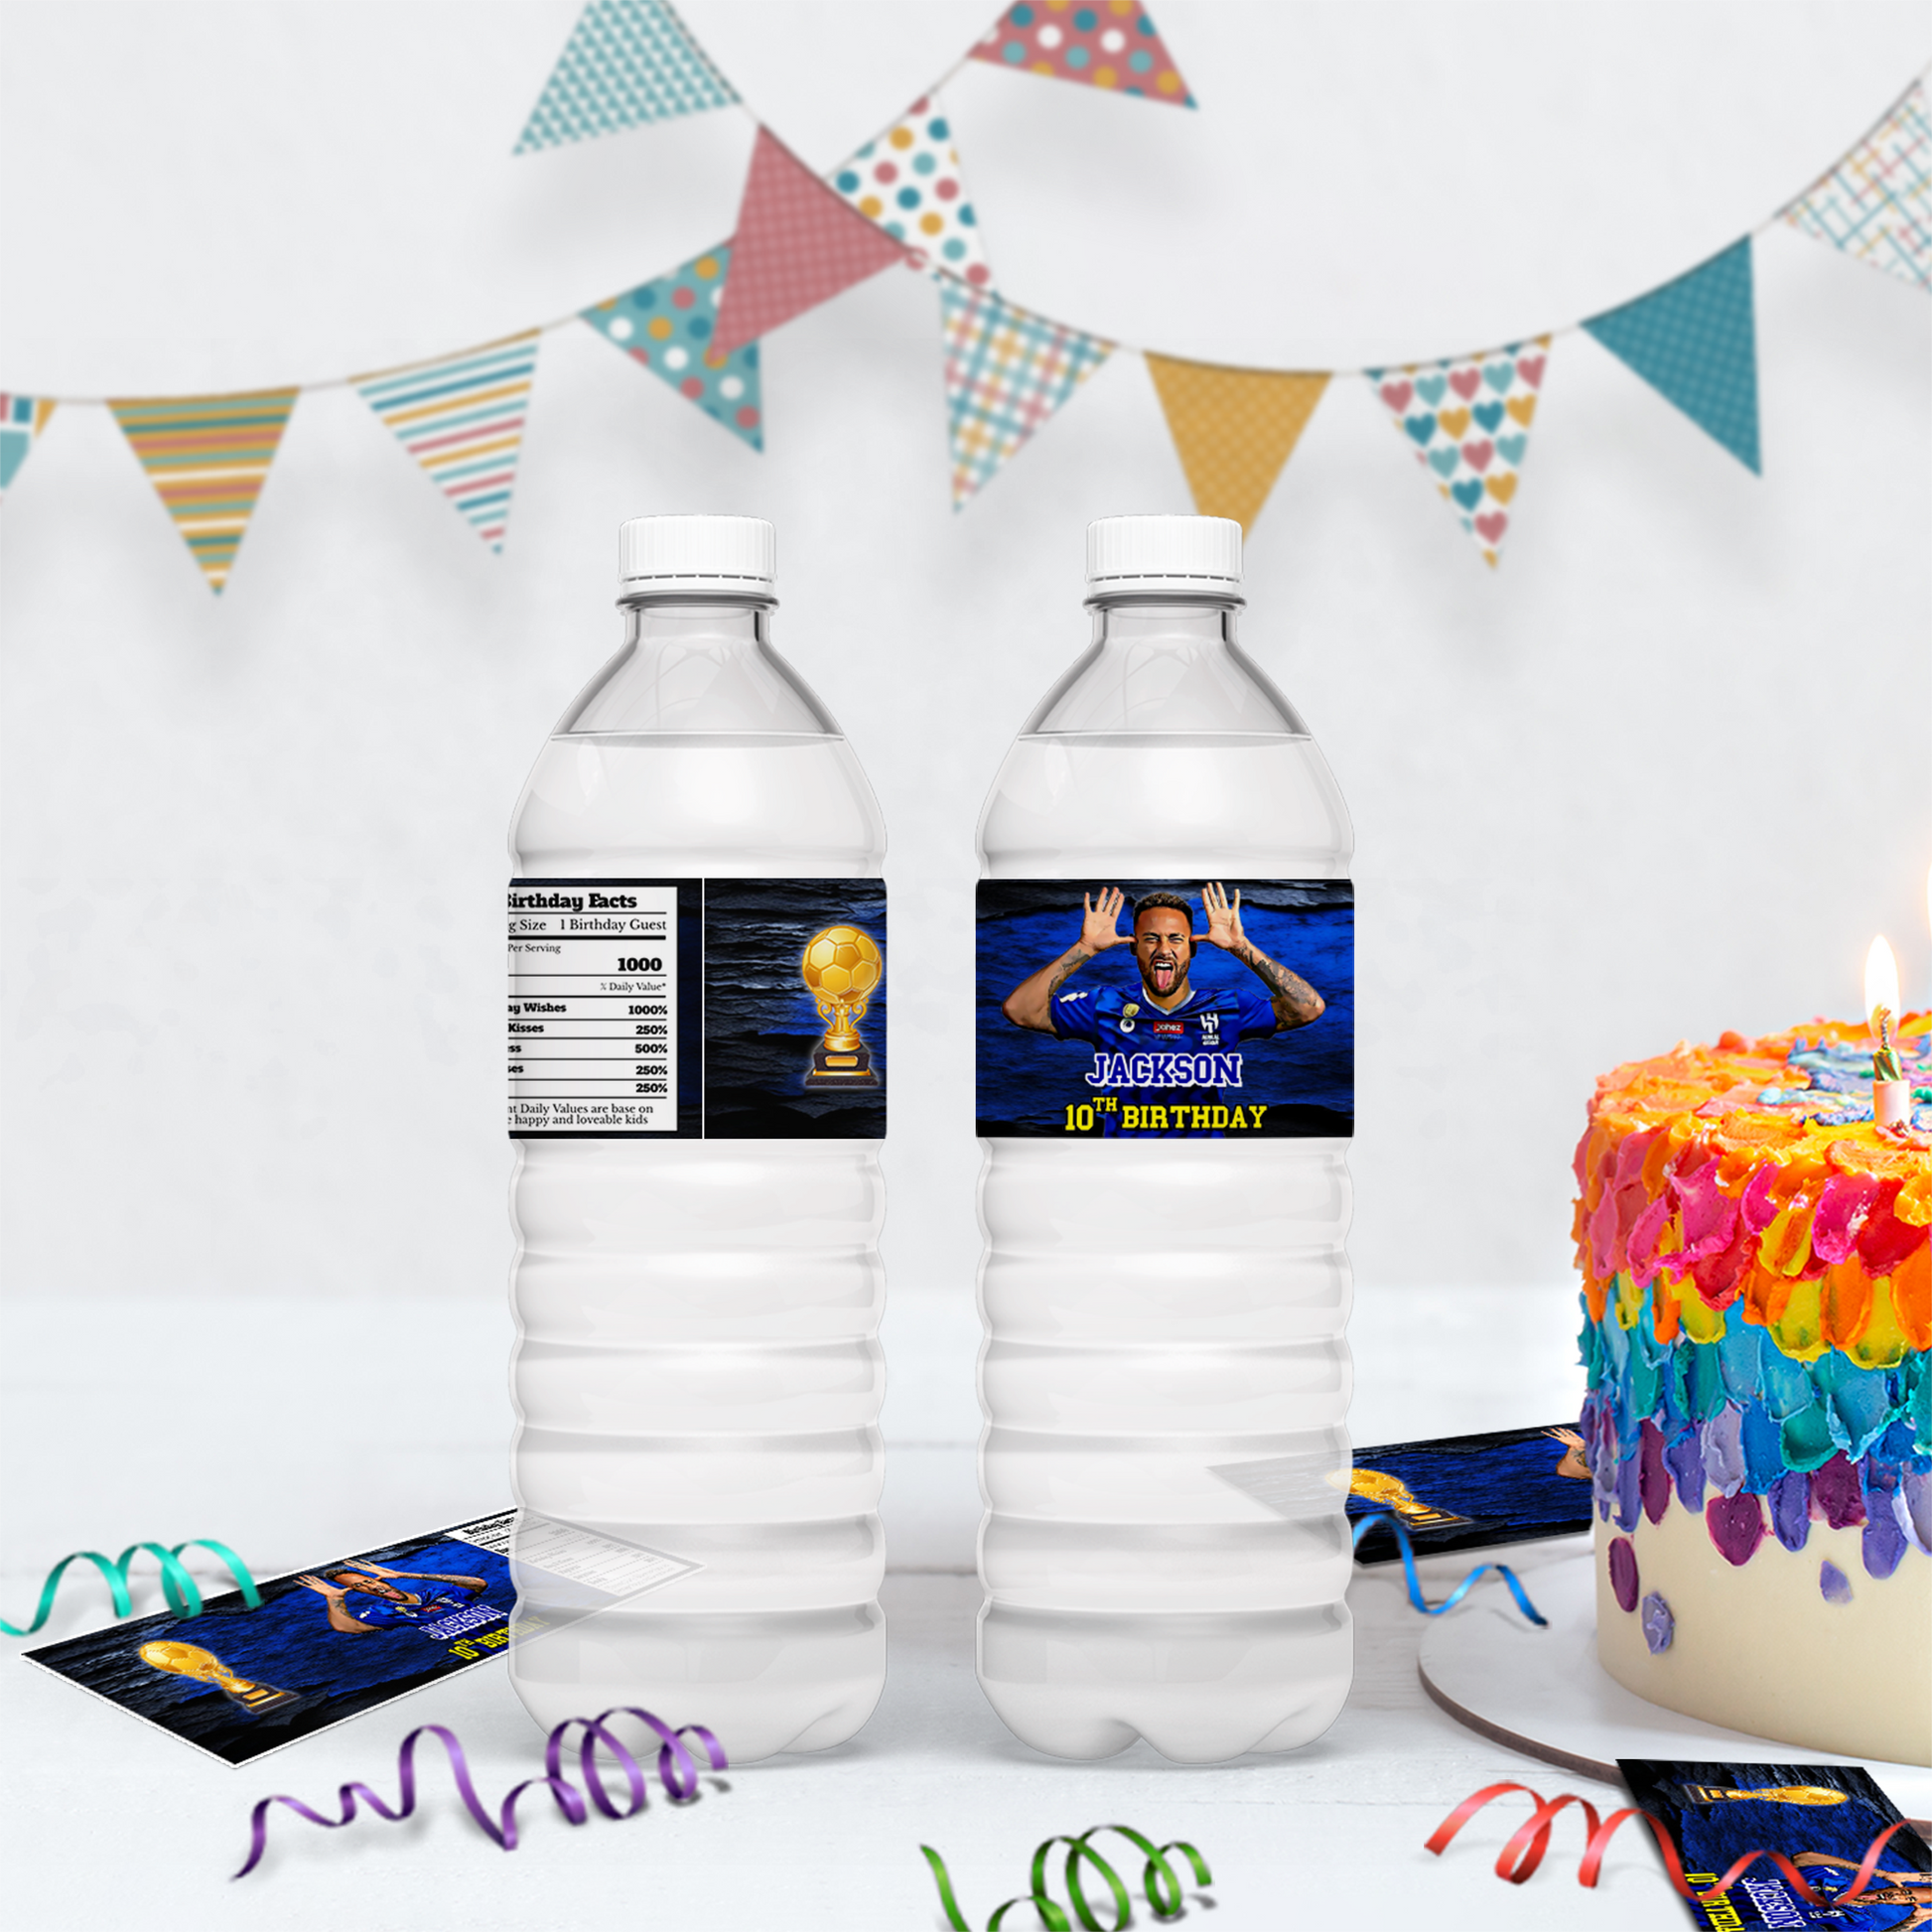 Water bottle label featuring Neymar